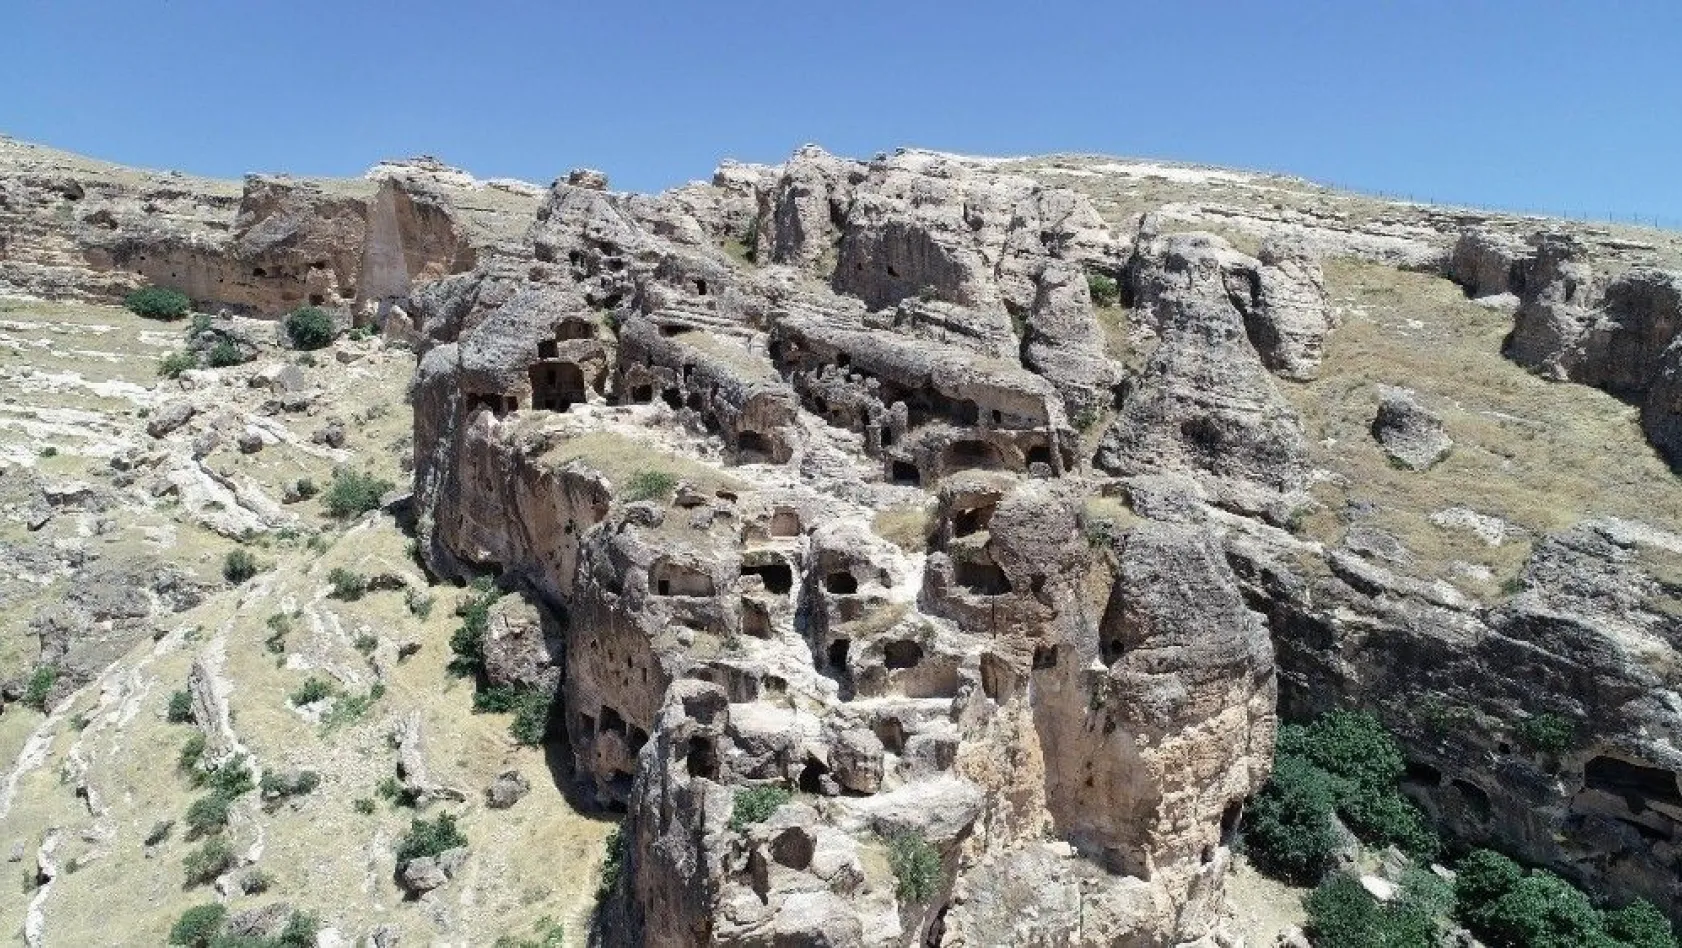 Bin yıllardır süren ihtişam: Hasuni Mağaraları